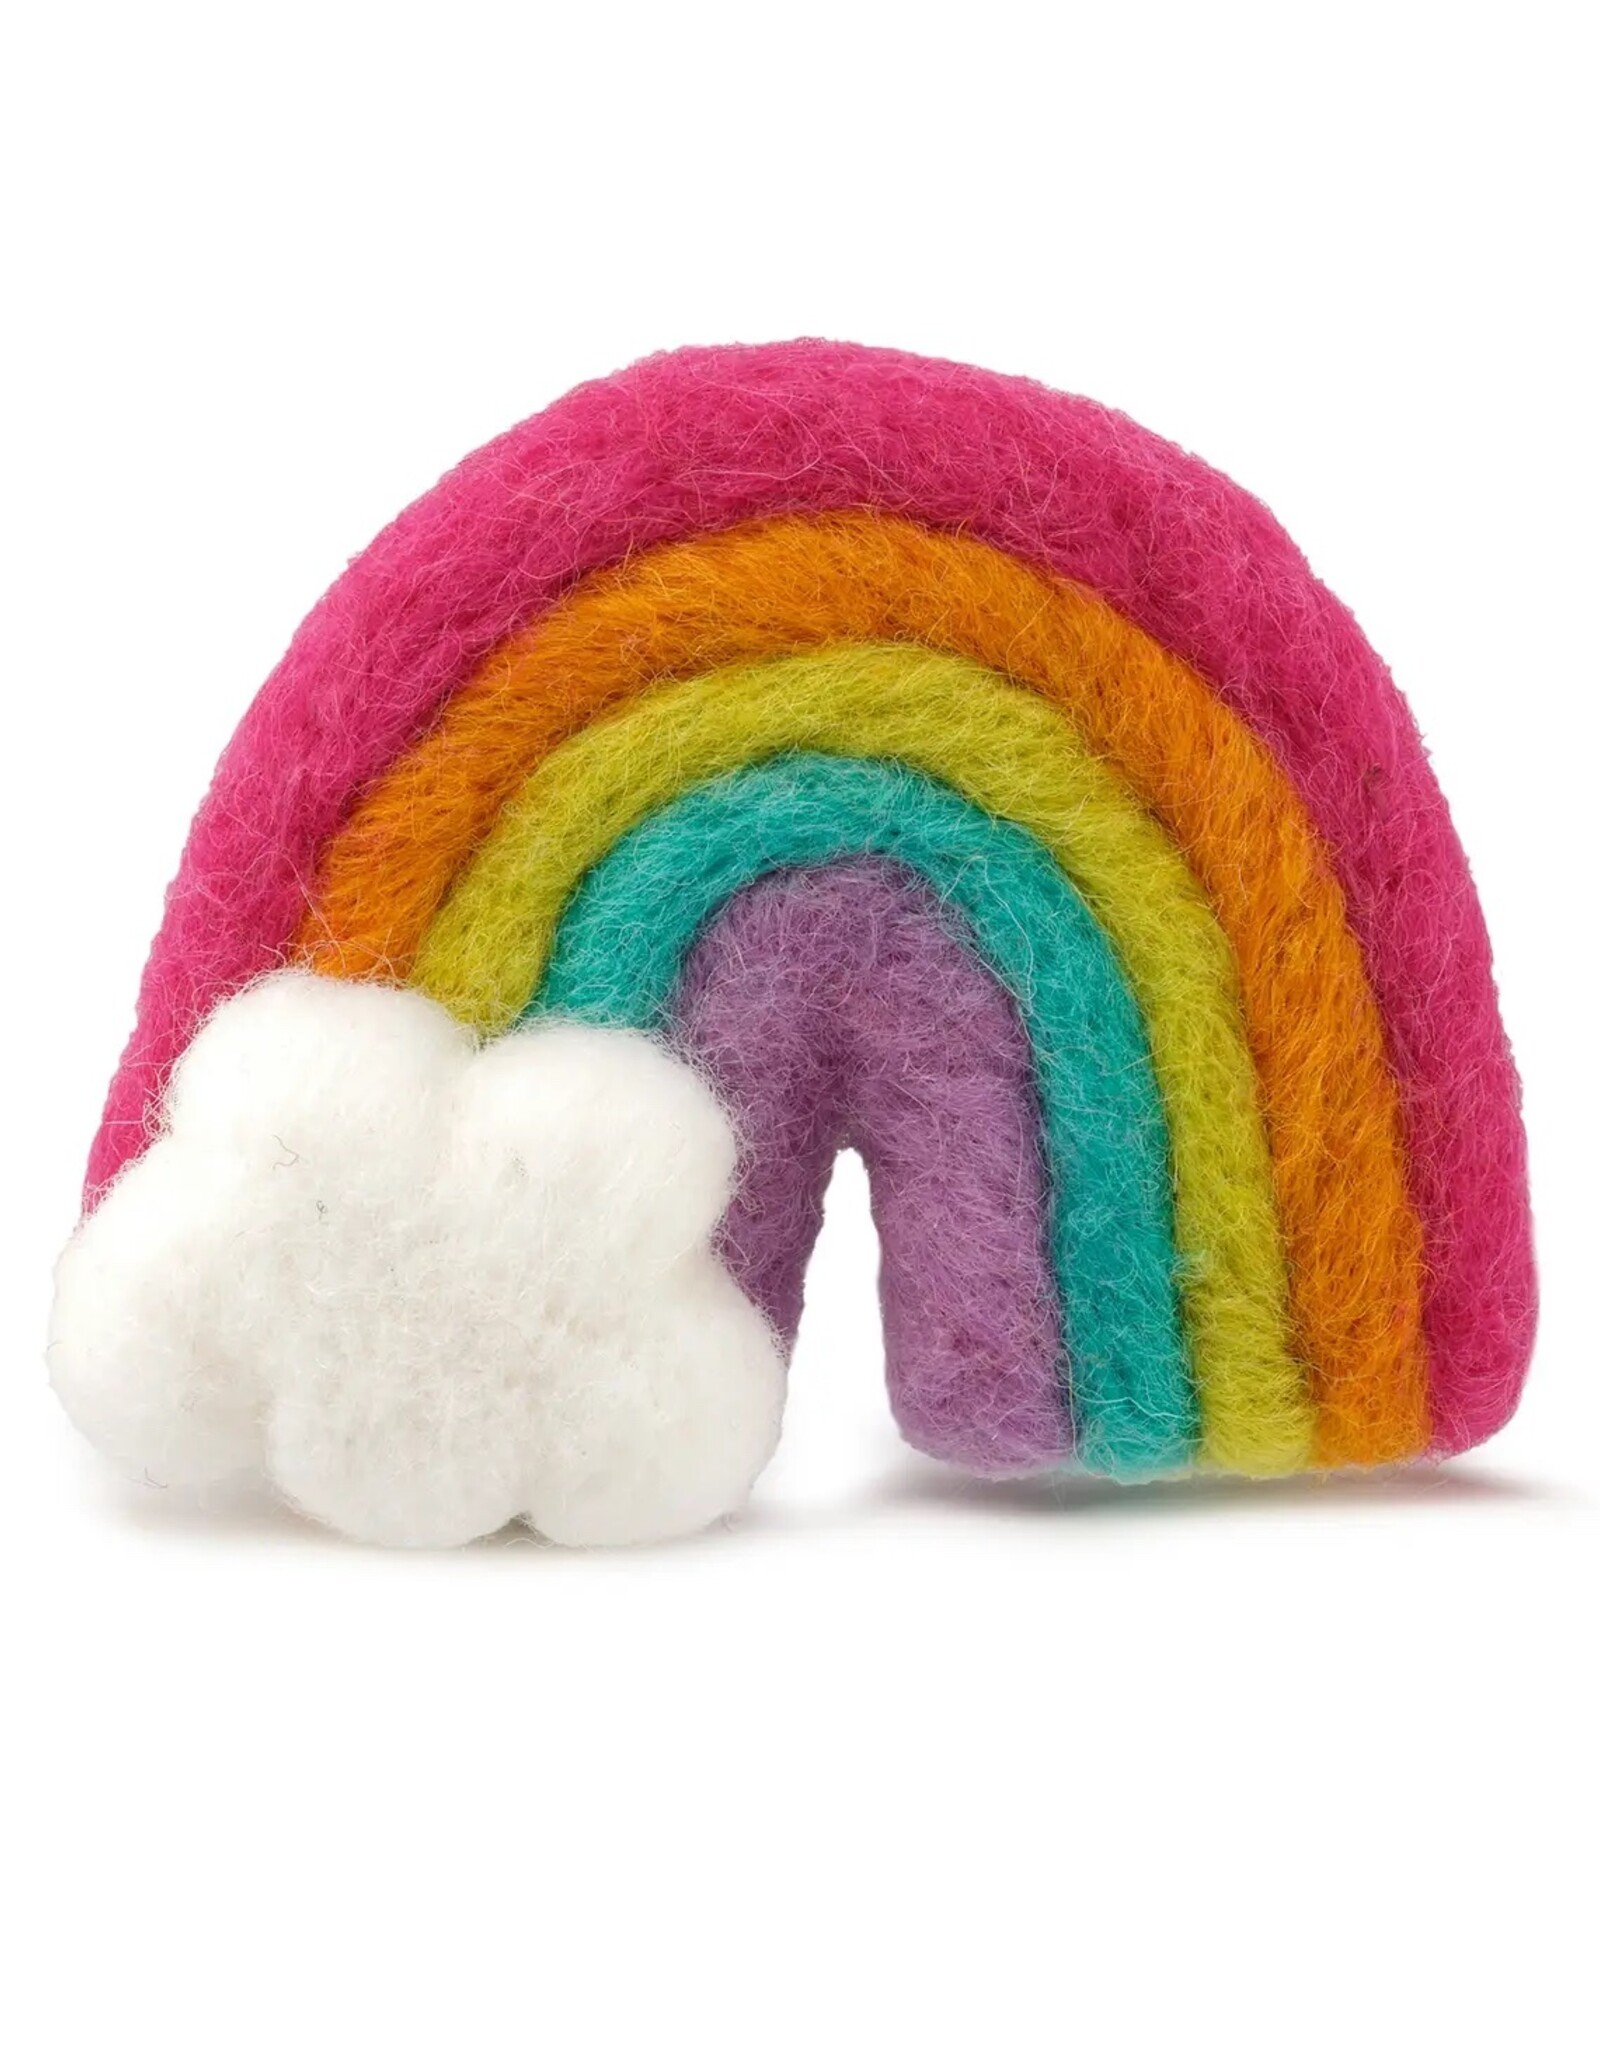 The Foggy Dog Rainbow Cat Toy